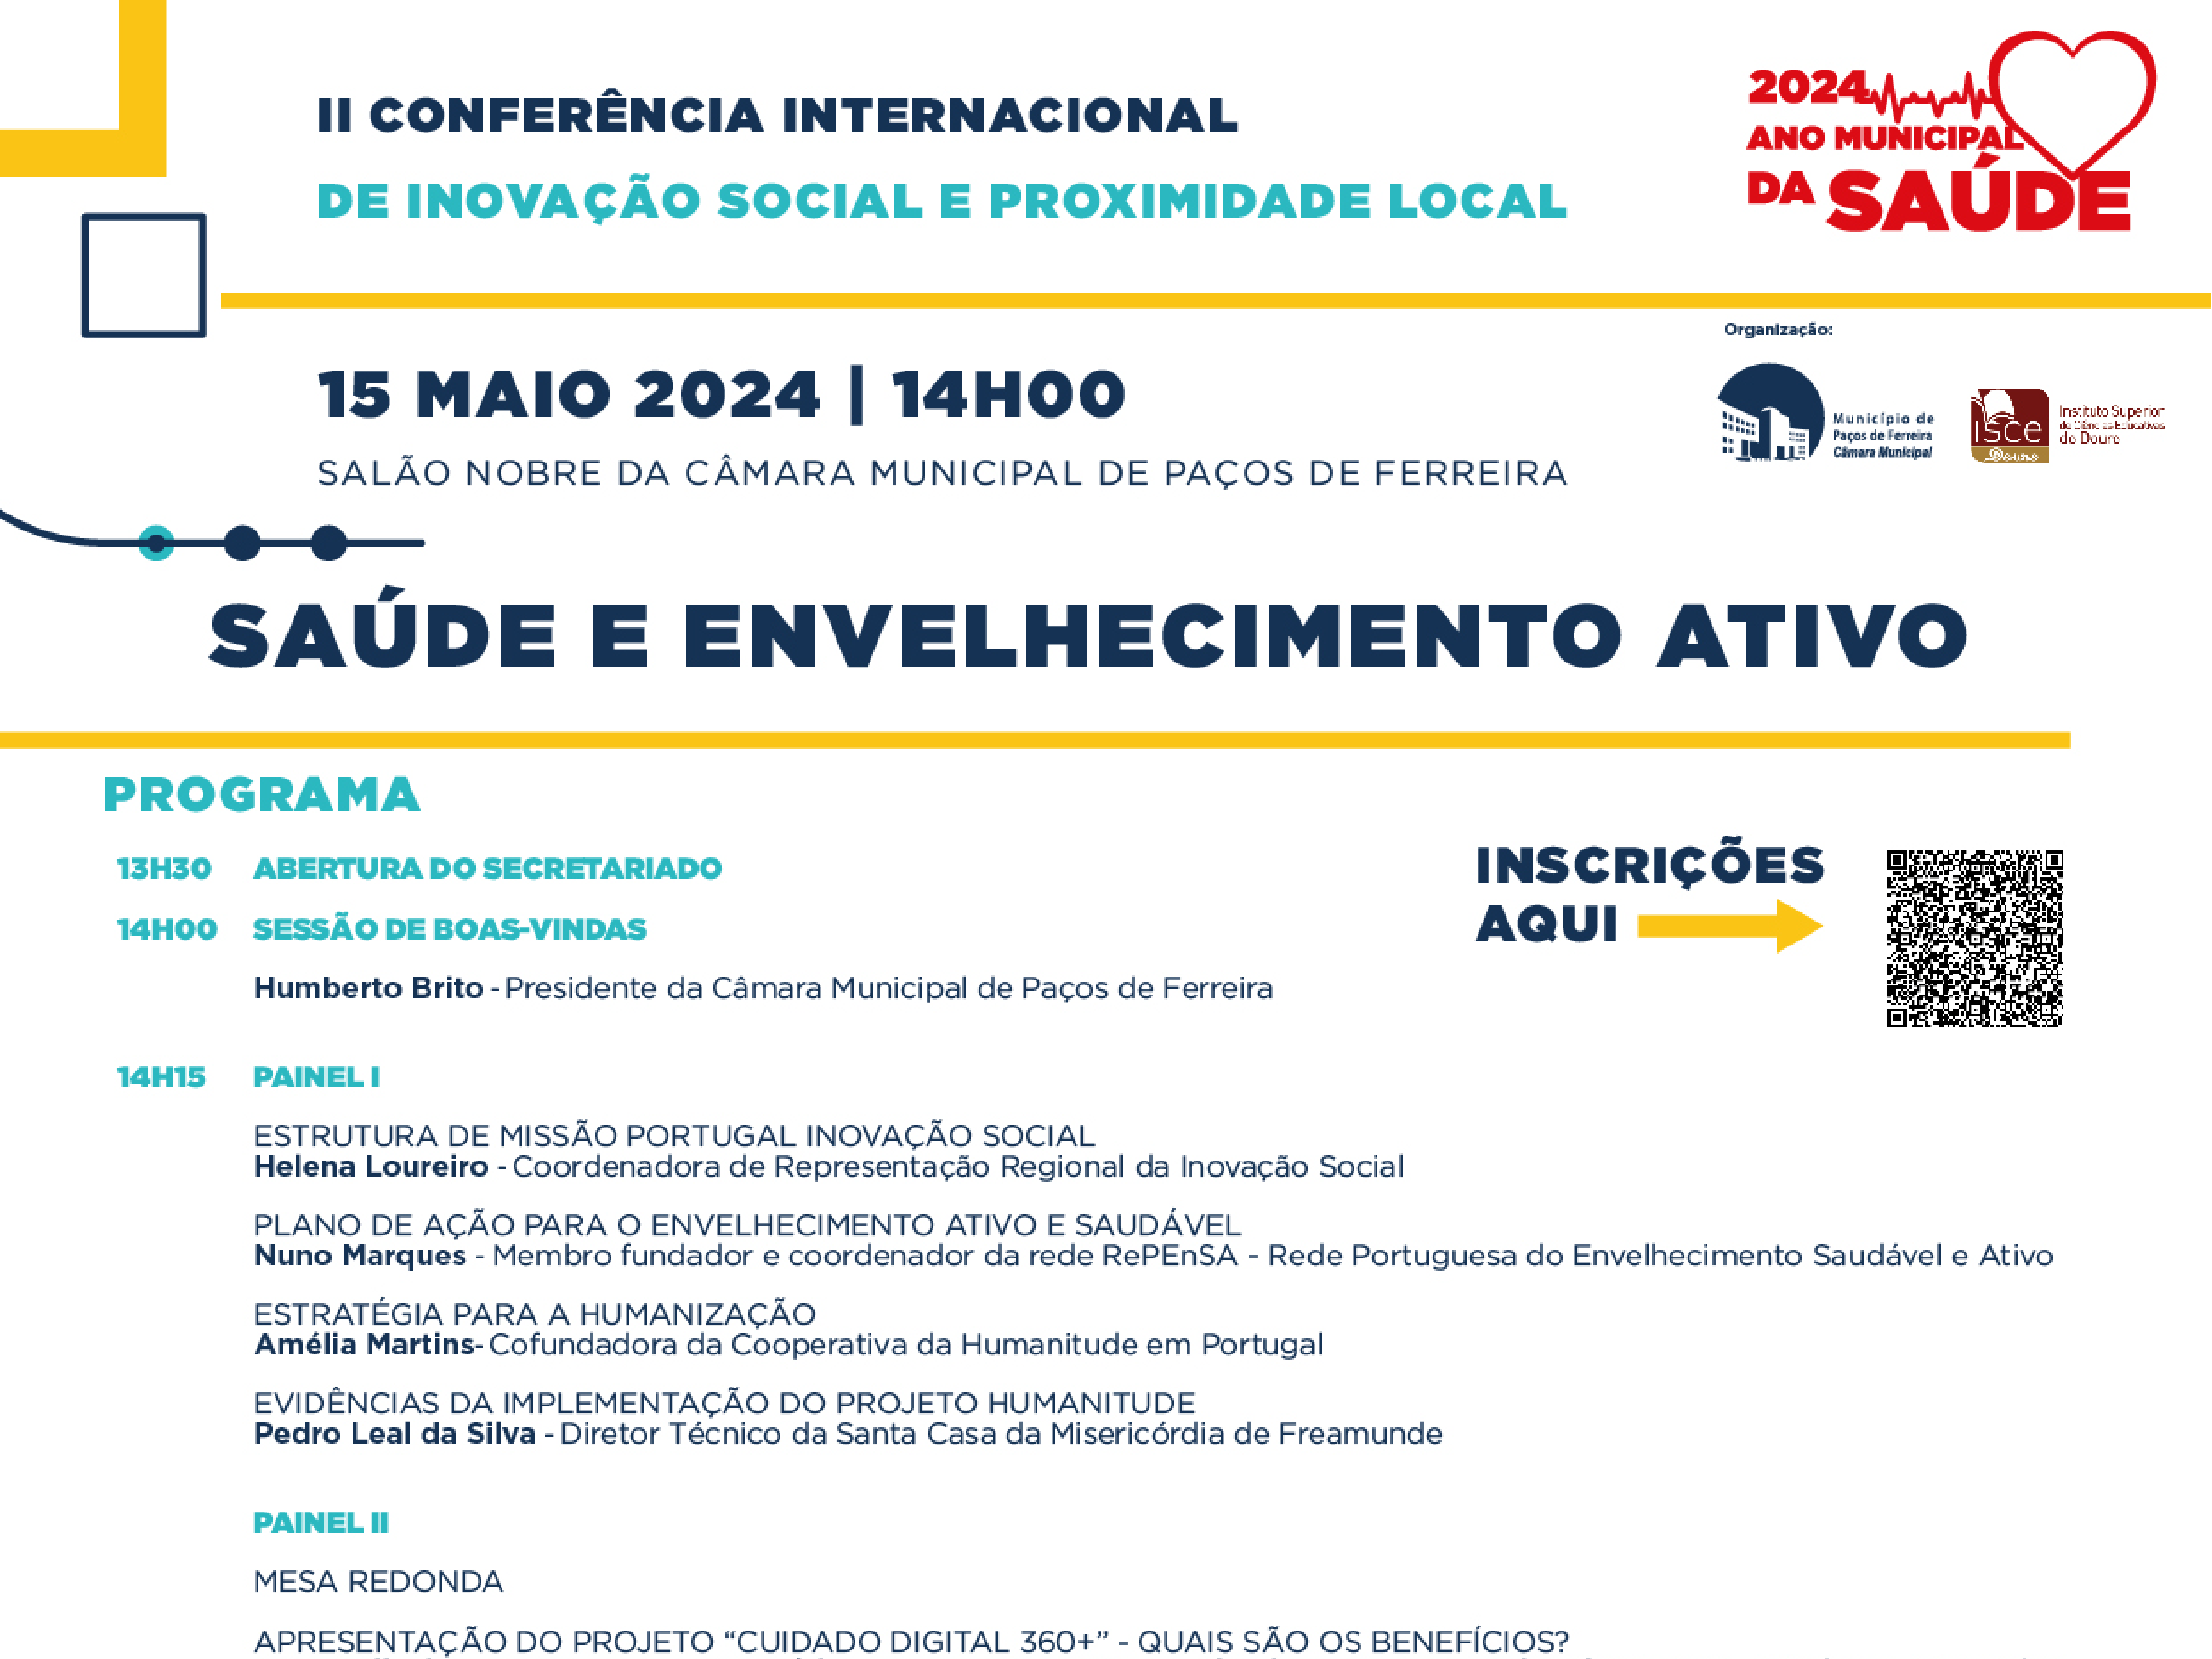 ISCE Douro participa na II Conferência Internacional de Inovação Social e Proximidade Local